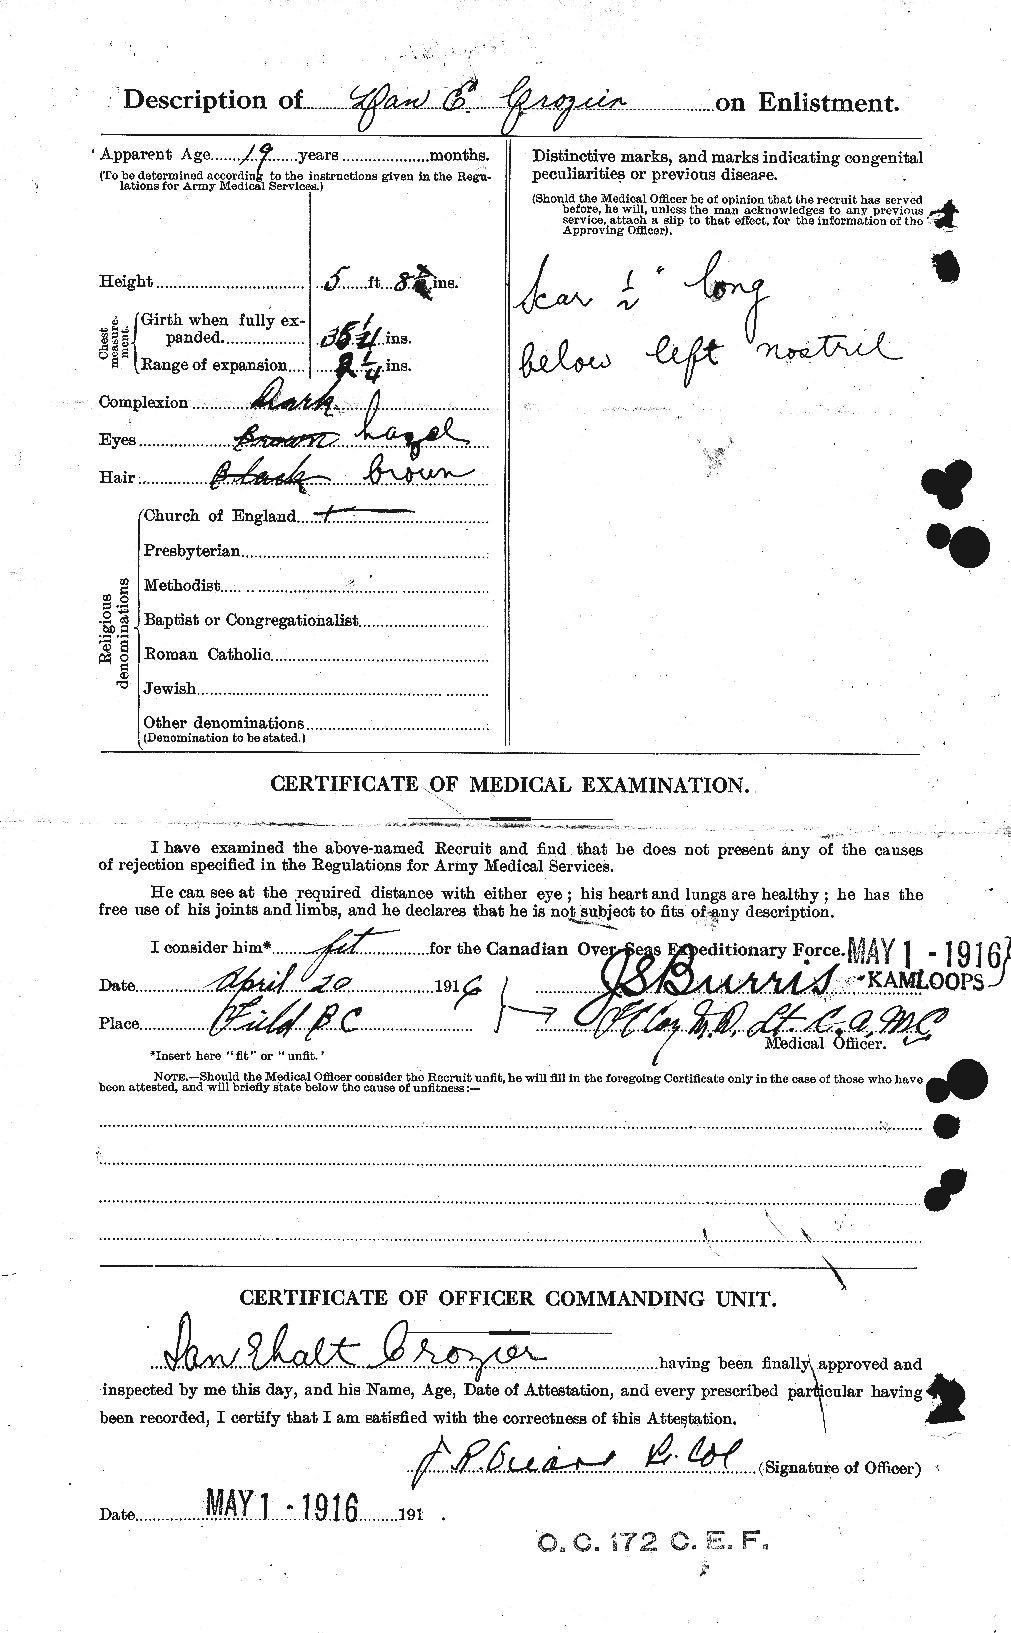 Dossiers du Personnel de la Première Guerre mondiale - CEC 066696b